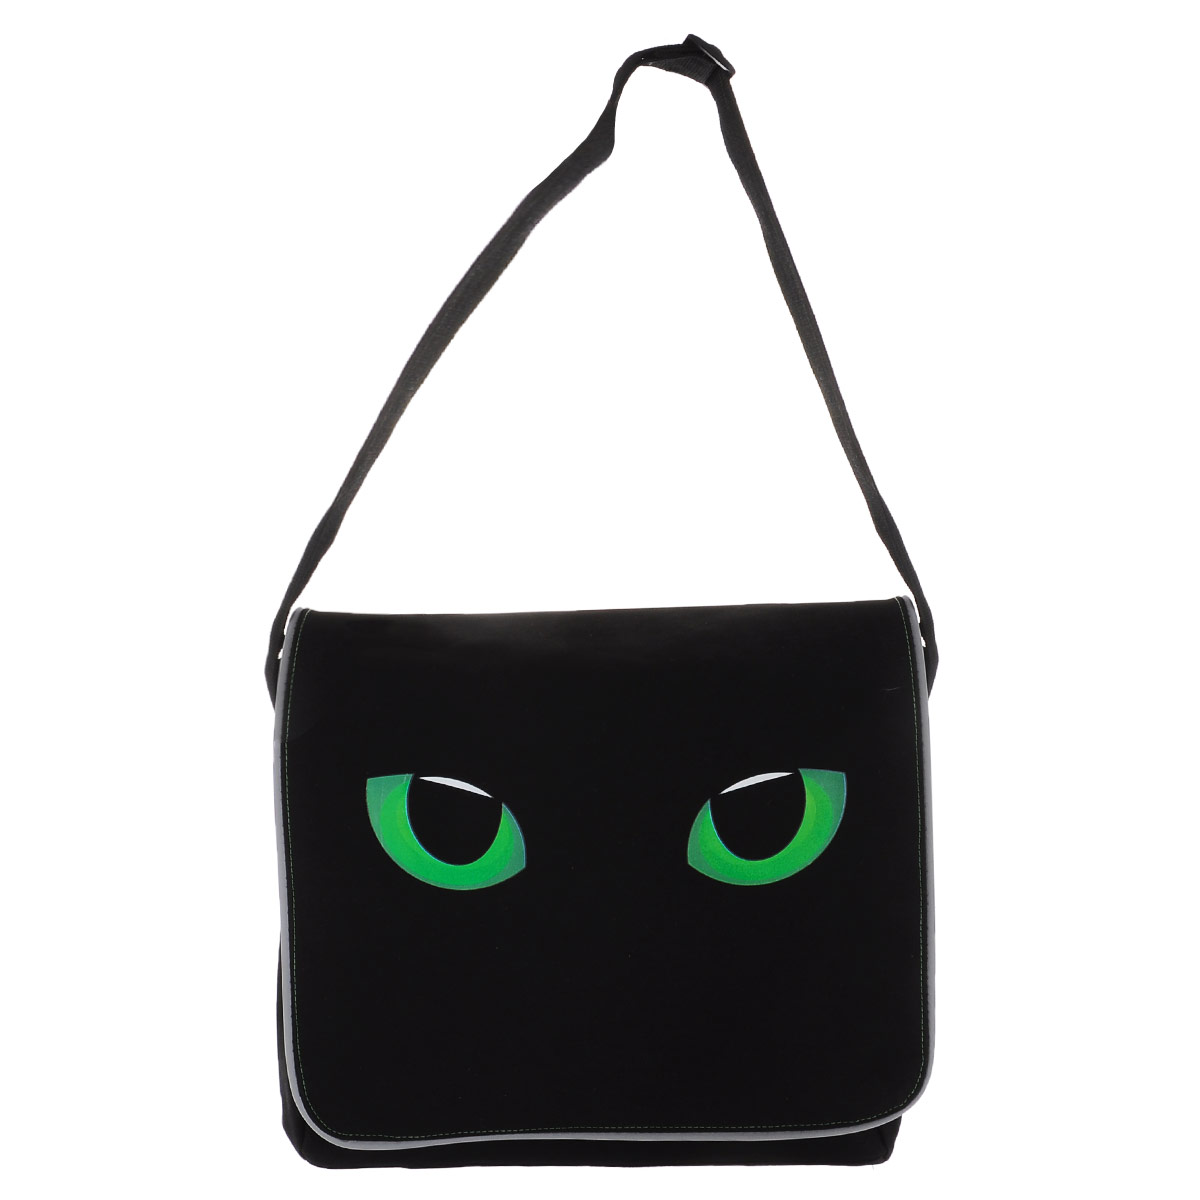 Https m pocket. Портфель для девочки Подмигивающий глаз кот черный.